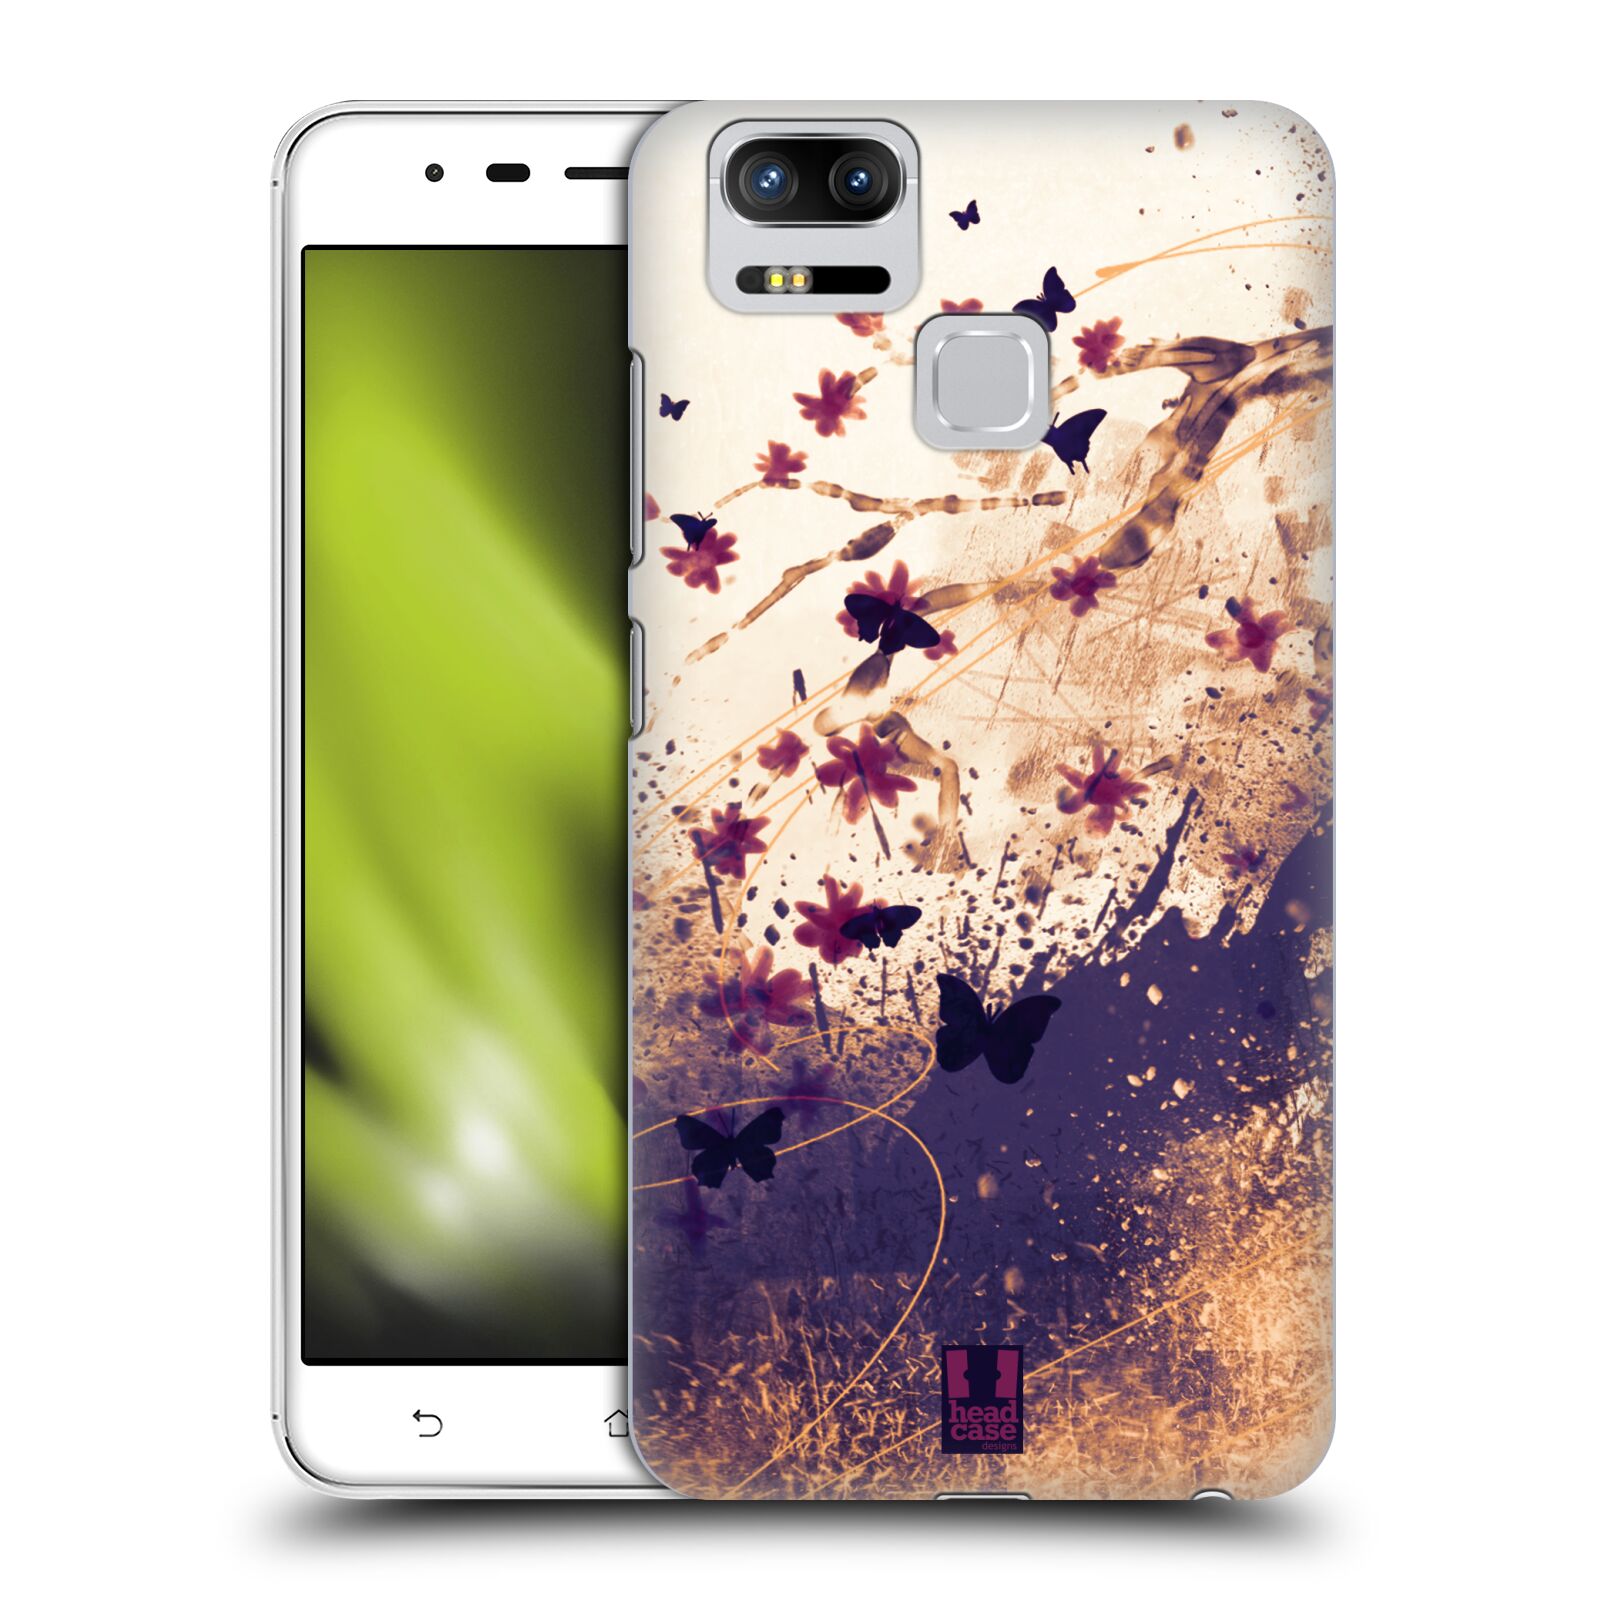 HEAD CASE plastový obal na mobil Asus Zenfone 3 Zoom ZE553KL vzor Kreslené barevné květiny KVĚTY A MOTÝLCI